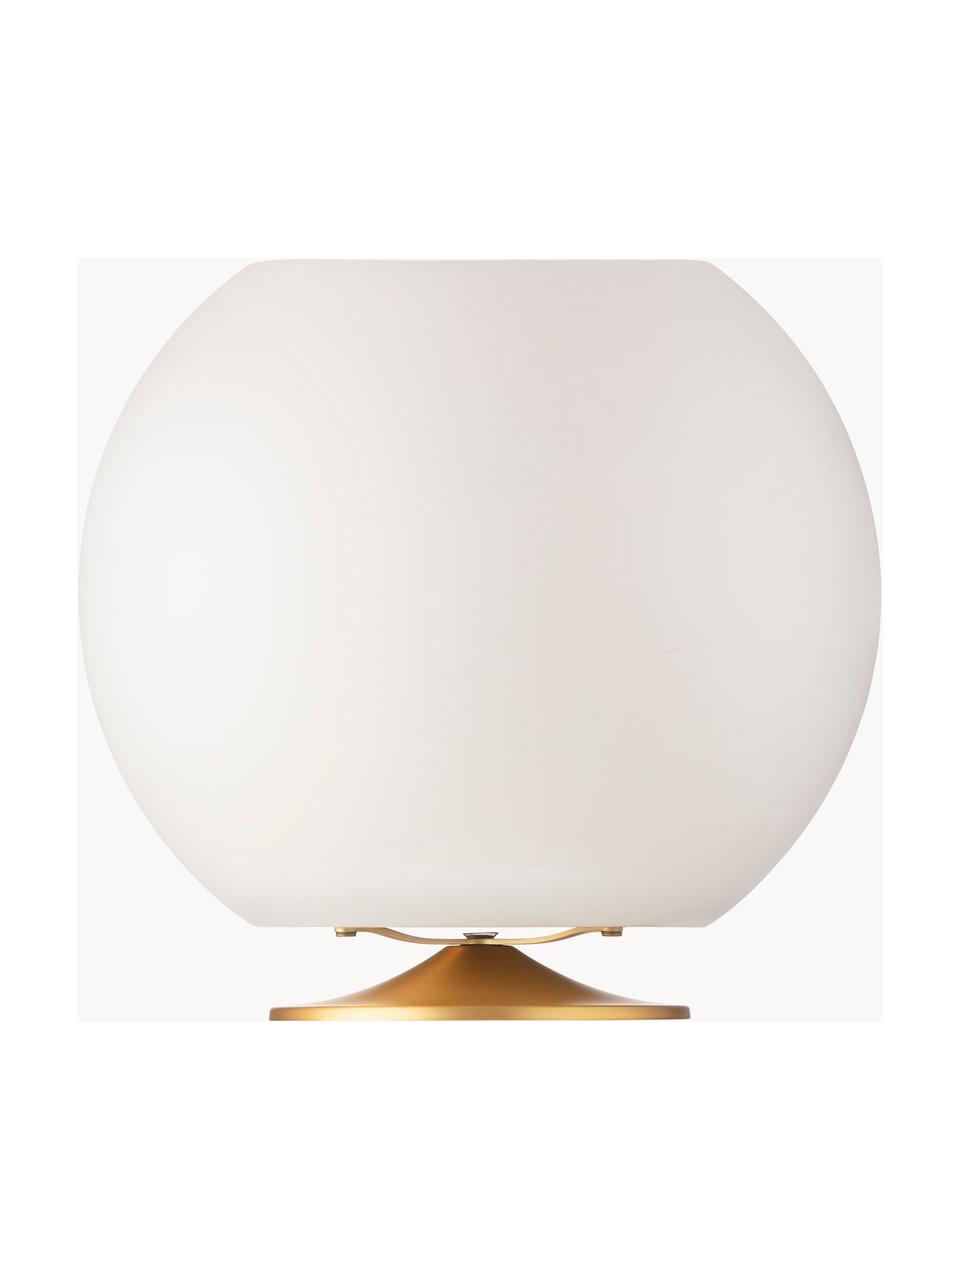 Dimmbare LED-Tischlampe Sphere mit Bluetooth-Lautsprecher und Flaschenkühler, Lampenschirm: Polyethylen, Weiss, Goldfarben, Ø 38 x H 36 cm